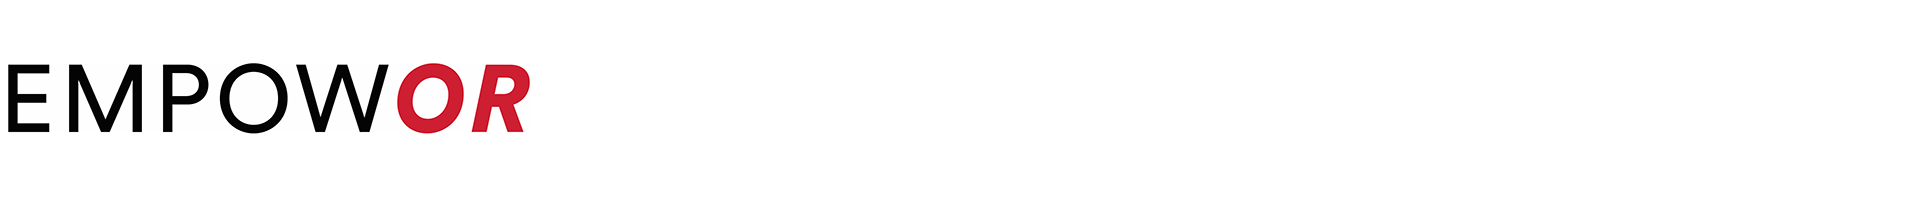 EMPOWOR Logo